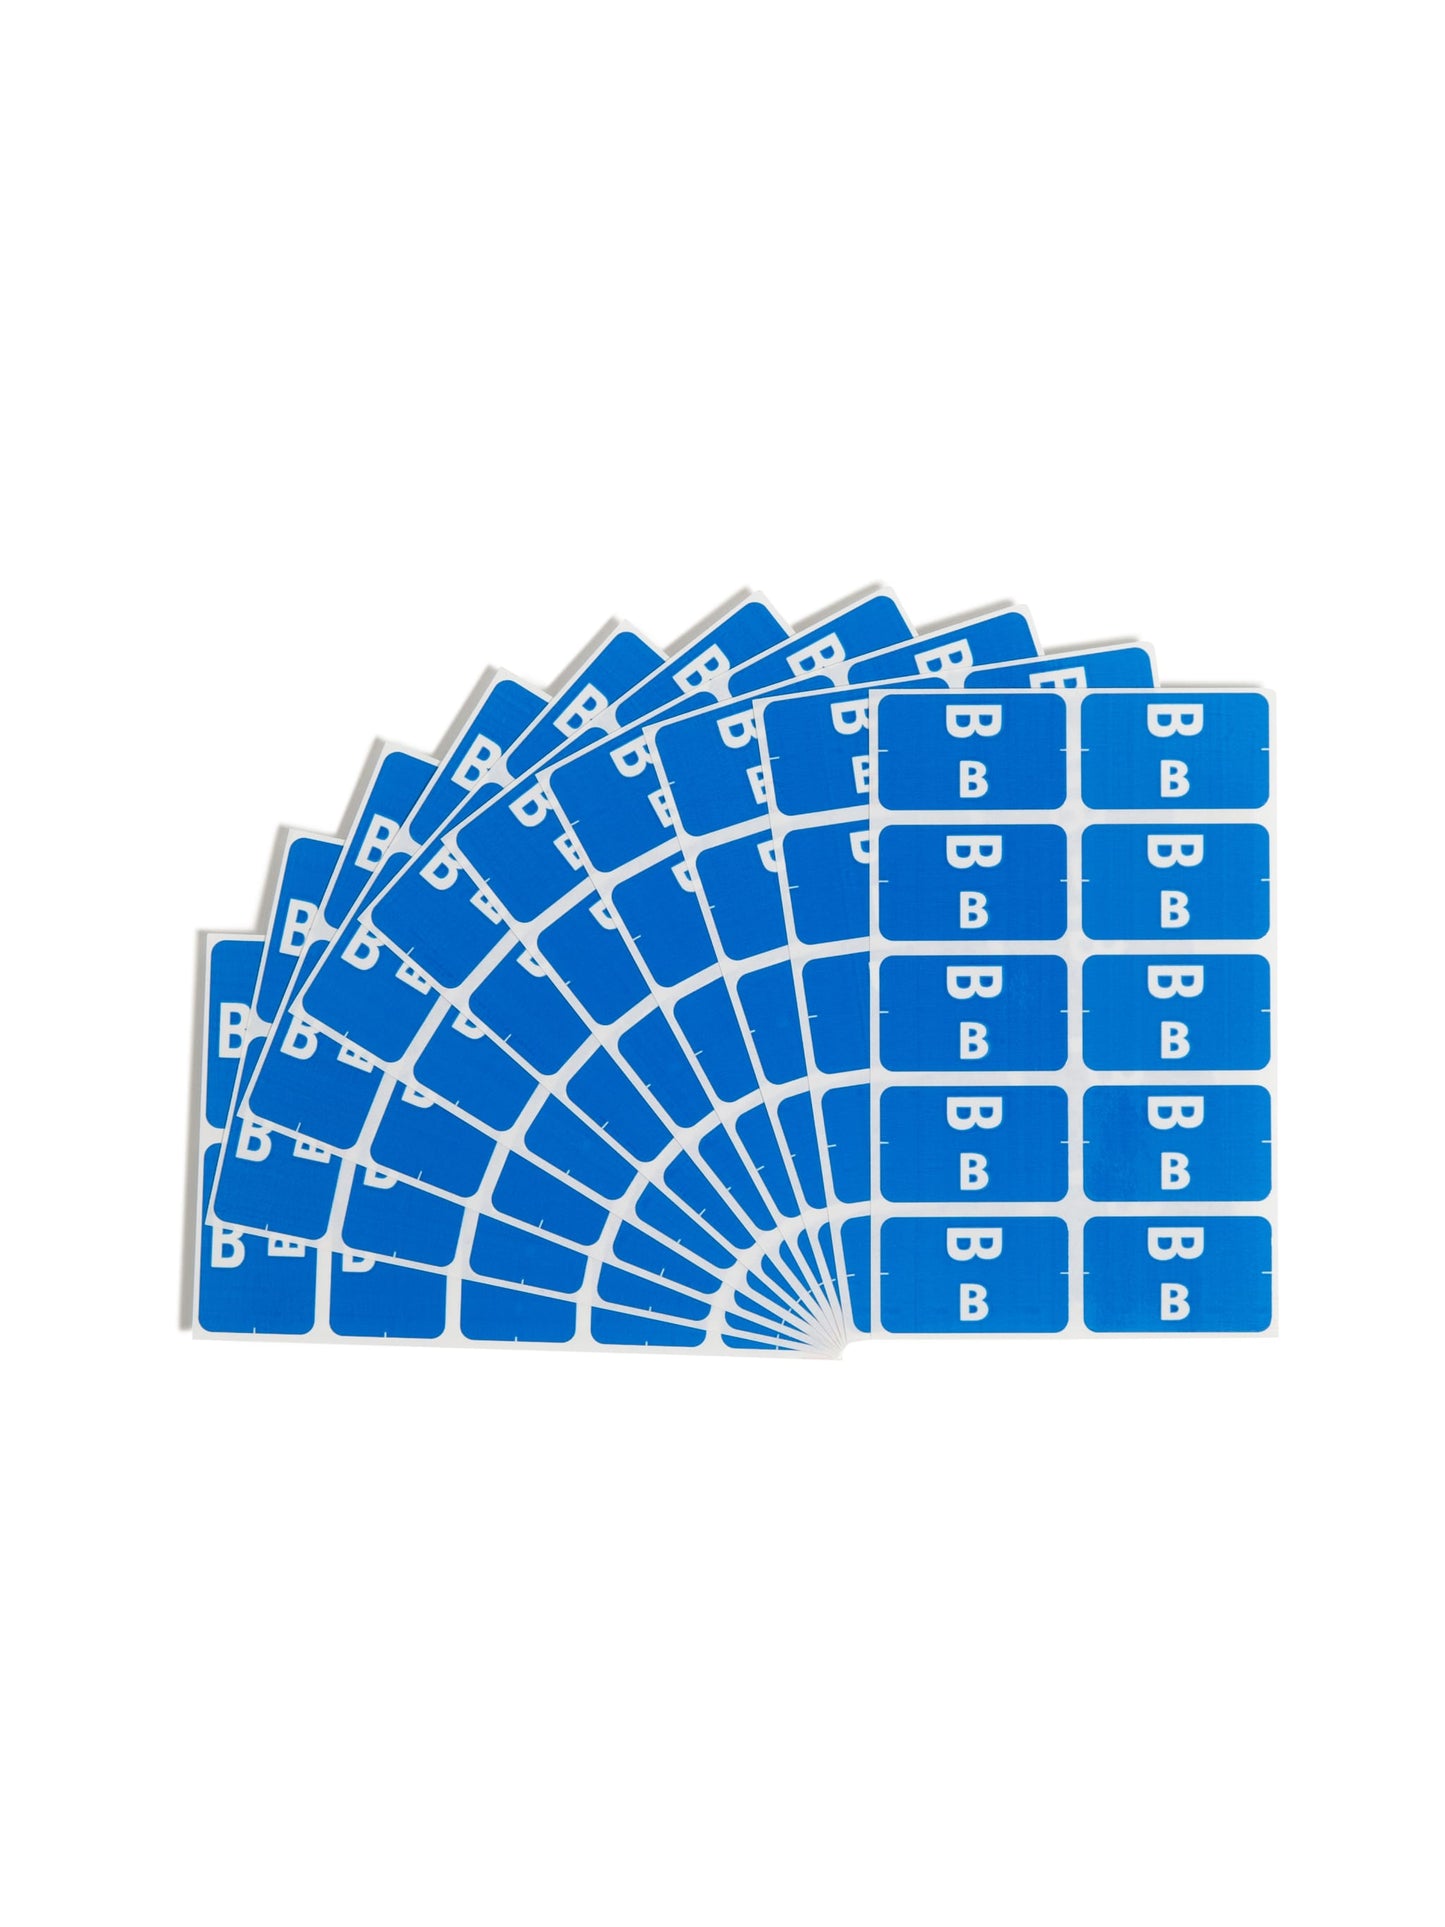 AlphaZ® ACCS Color Coded Alphabetic Labels - Sheets, Dark Blue Color, 1" X 1-5/8" Size, Set of 1, 086486671729